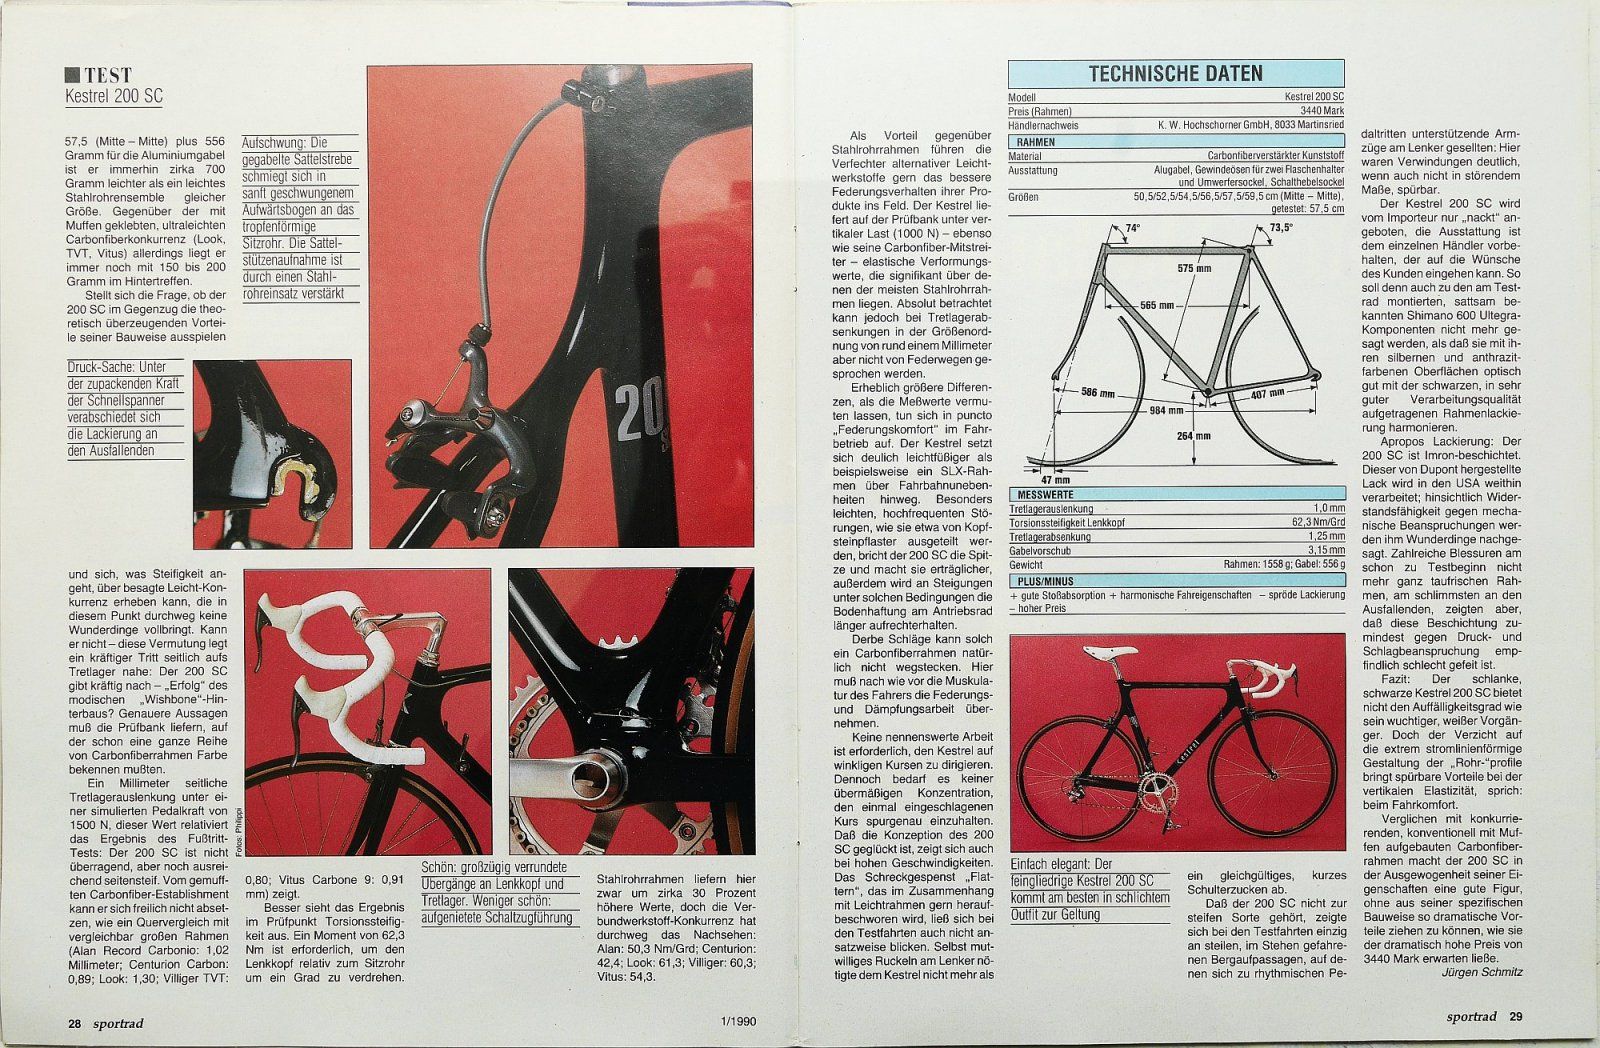 Sportrad 1990-01 Kestrel 200 SC Seite 2.jpg